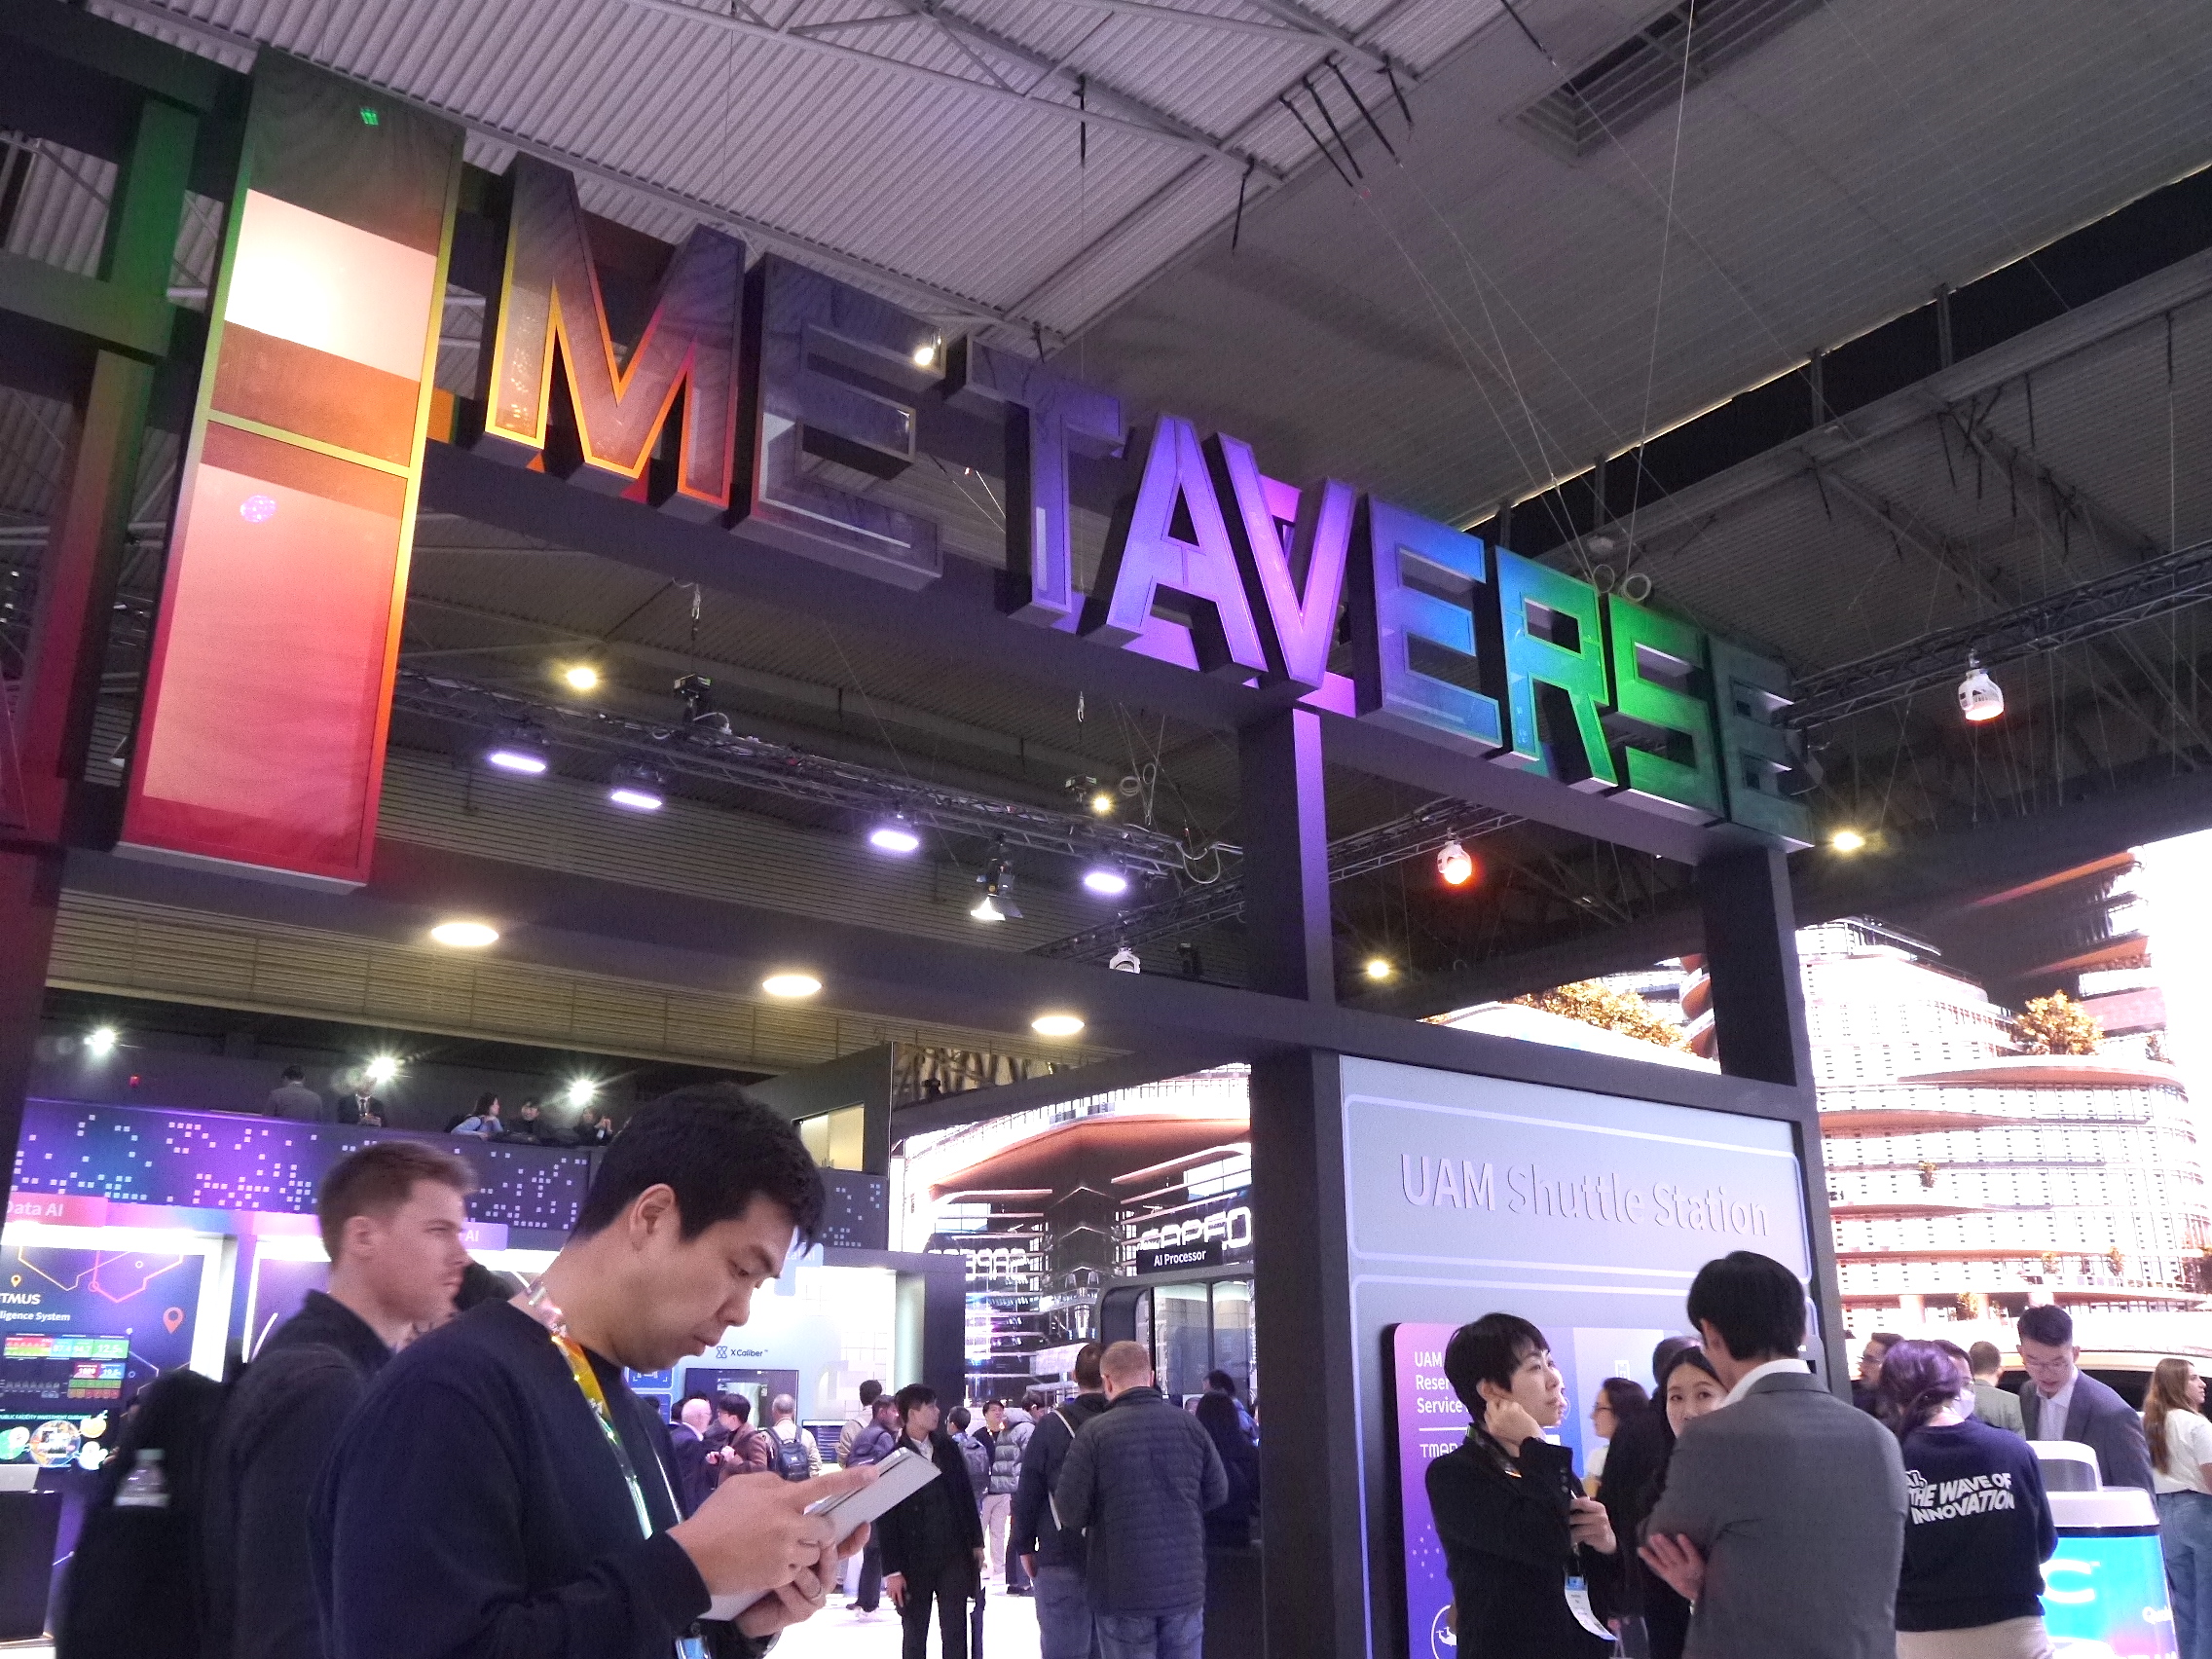 Se muestra un colorido logotipo de 'Metaverse' sobre un stand en la feria comercial MWC 2023 en Barcelona